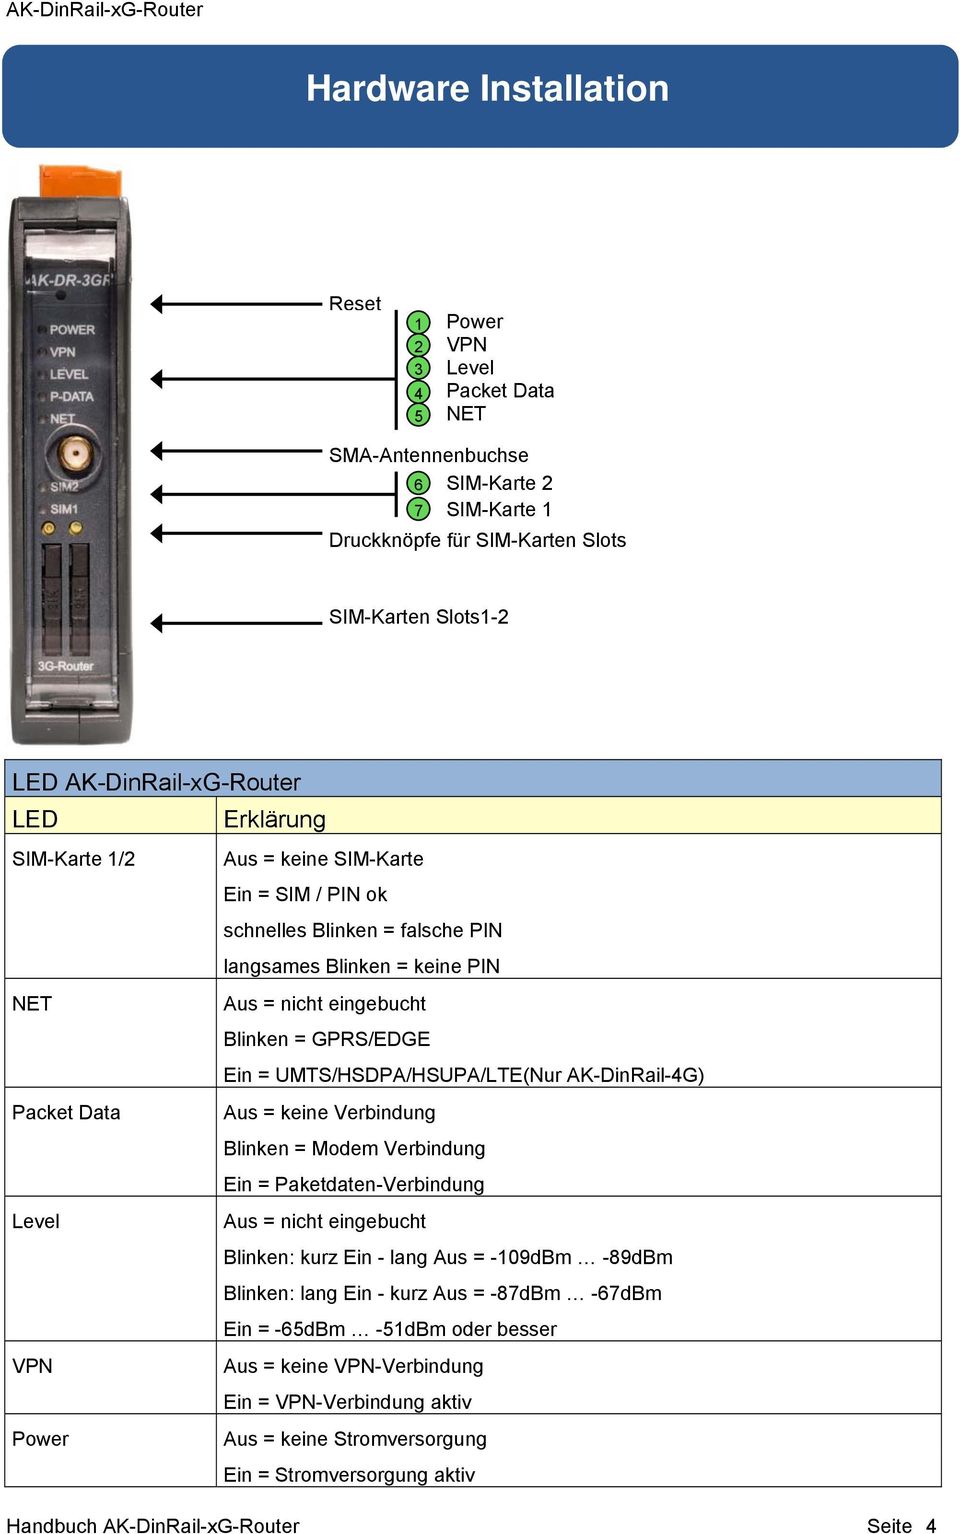 UMTS/HSDPA/HSUPA/LTE(Nur AK-DinRail-4G) Packet Data Aus = keine Verbindung Blinken = Modem Verbindung Ein = Paketdaten-Verbindung Level Aus = nicht eingebucht Blinken: kurz Ein - lang Aus = -109dBm